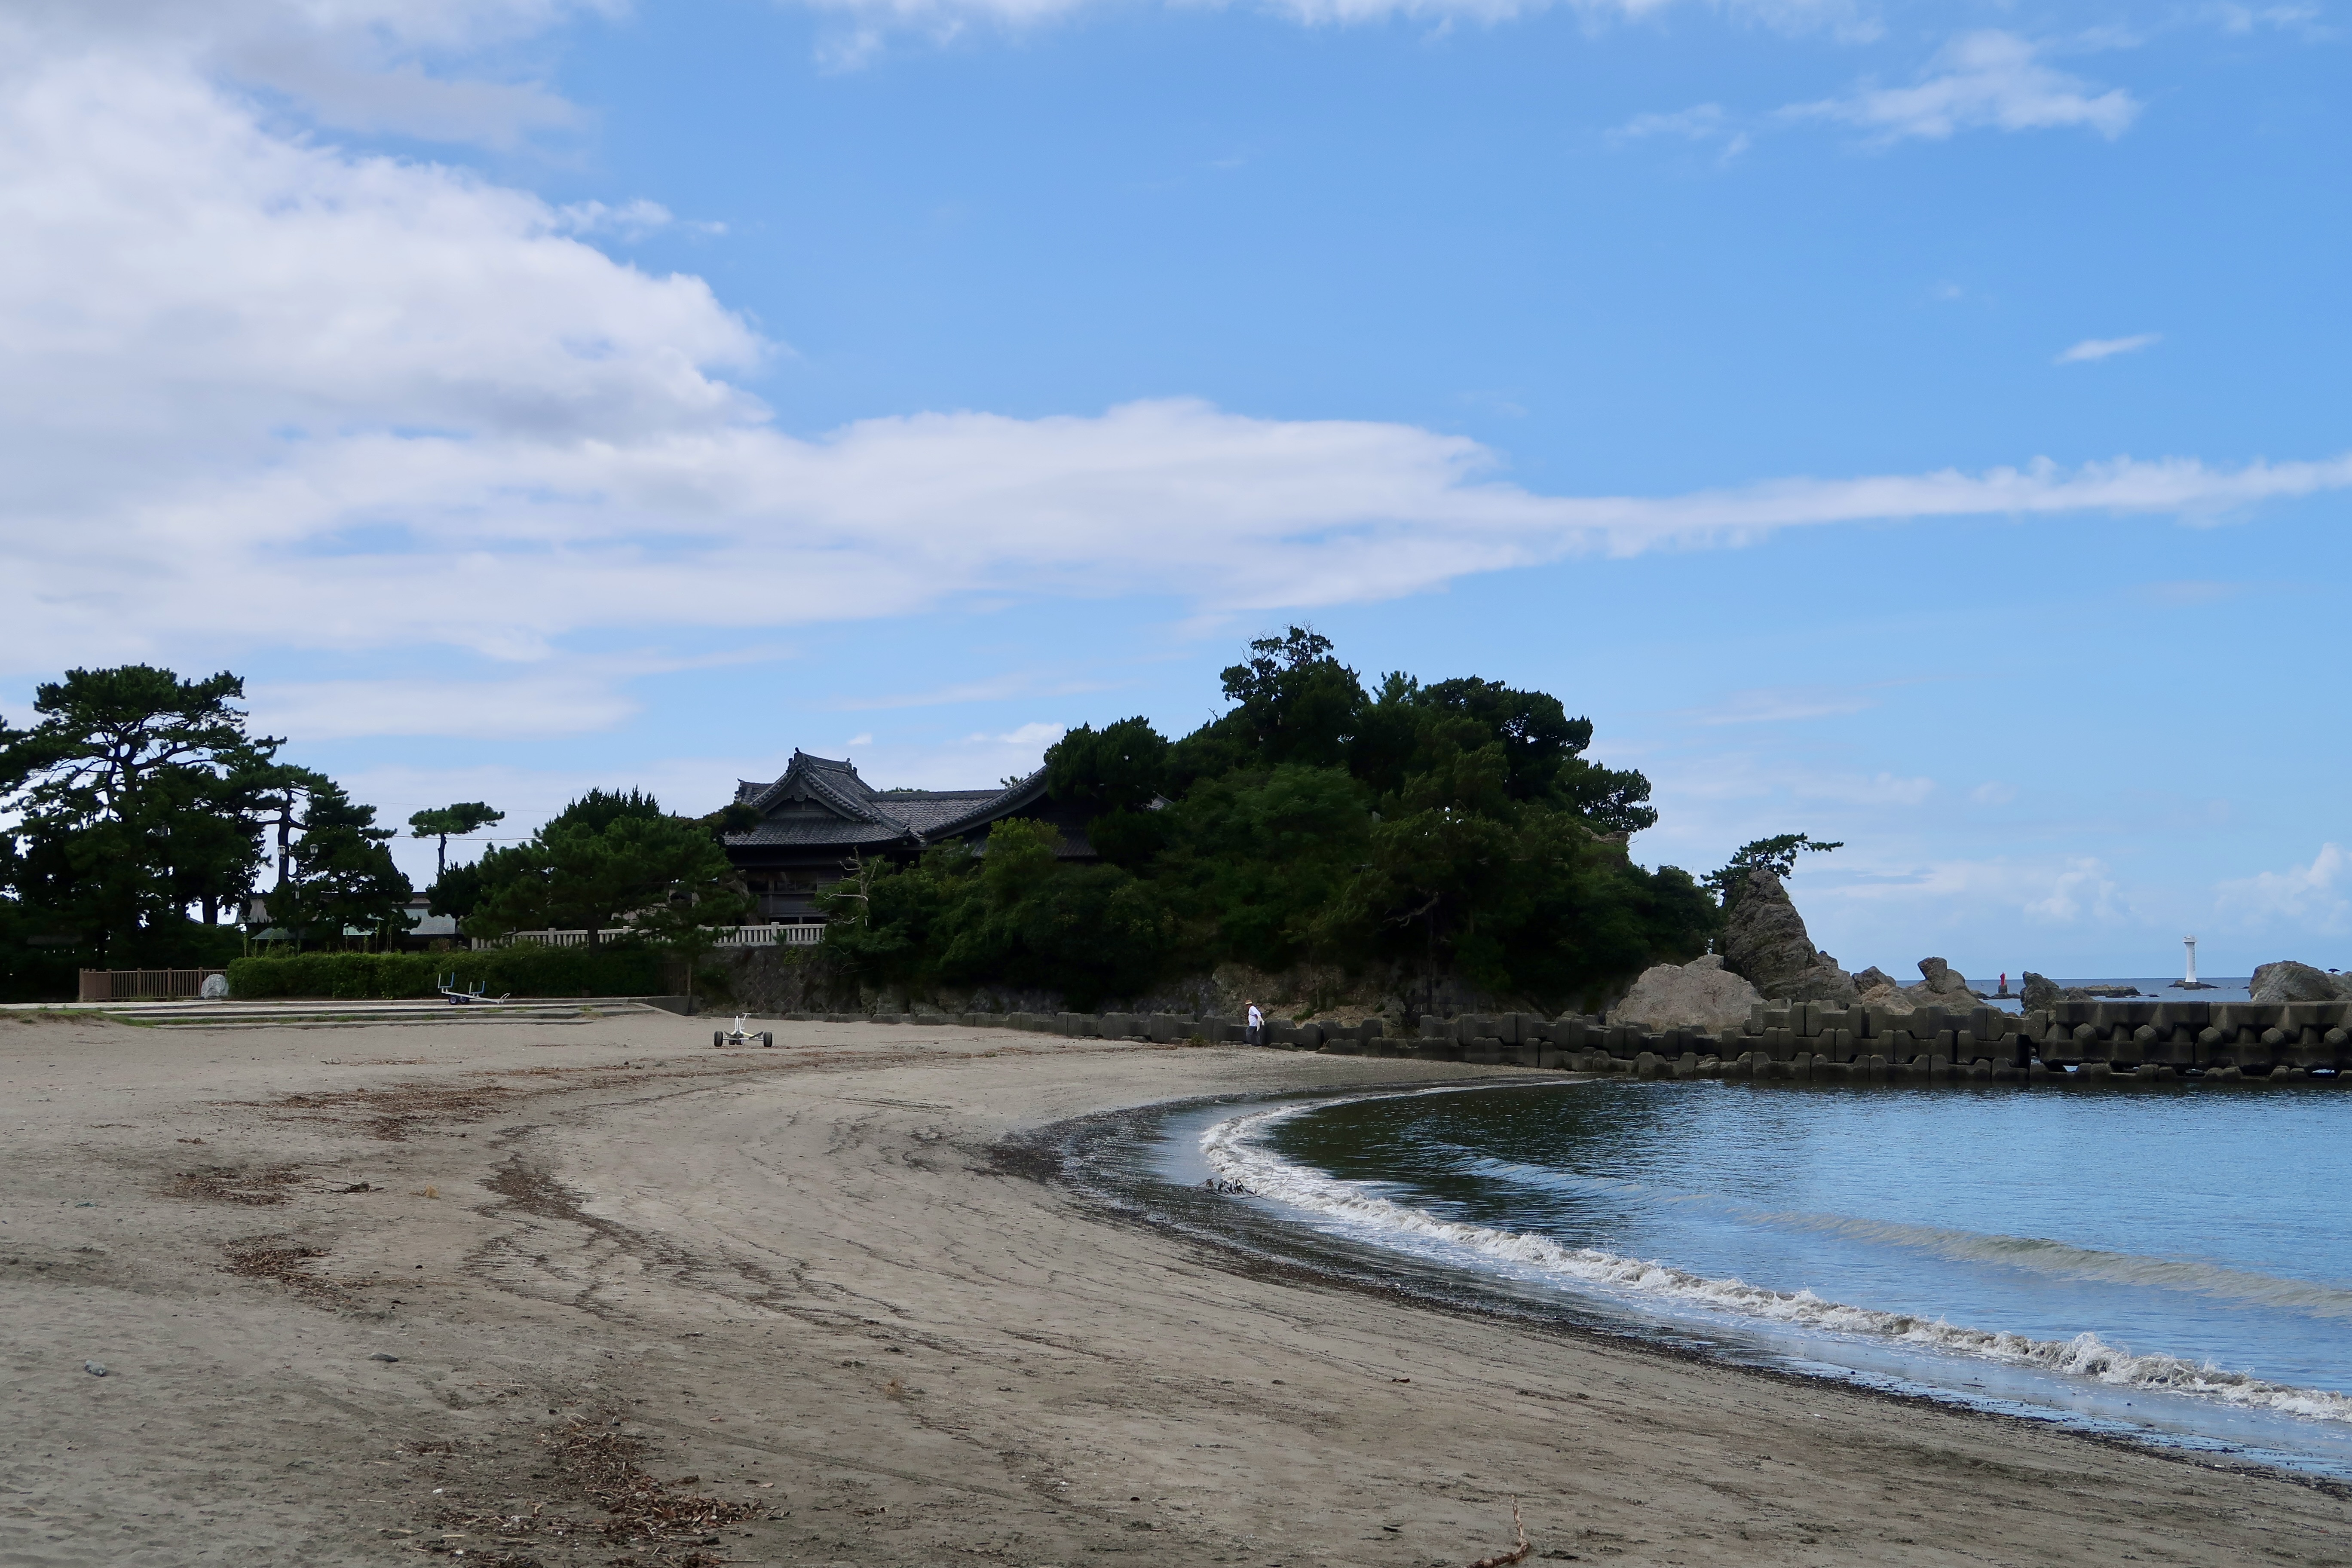 ชายหาดโมริโตะกับศาลเจ้าโมริโตะที่อยู่ห่างออกไป